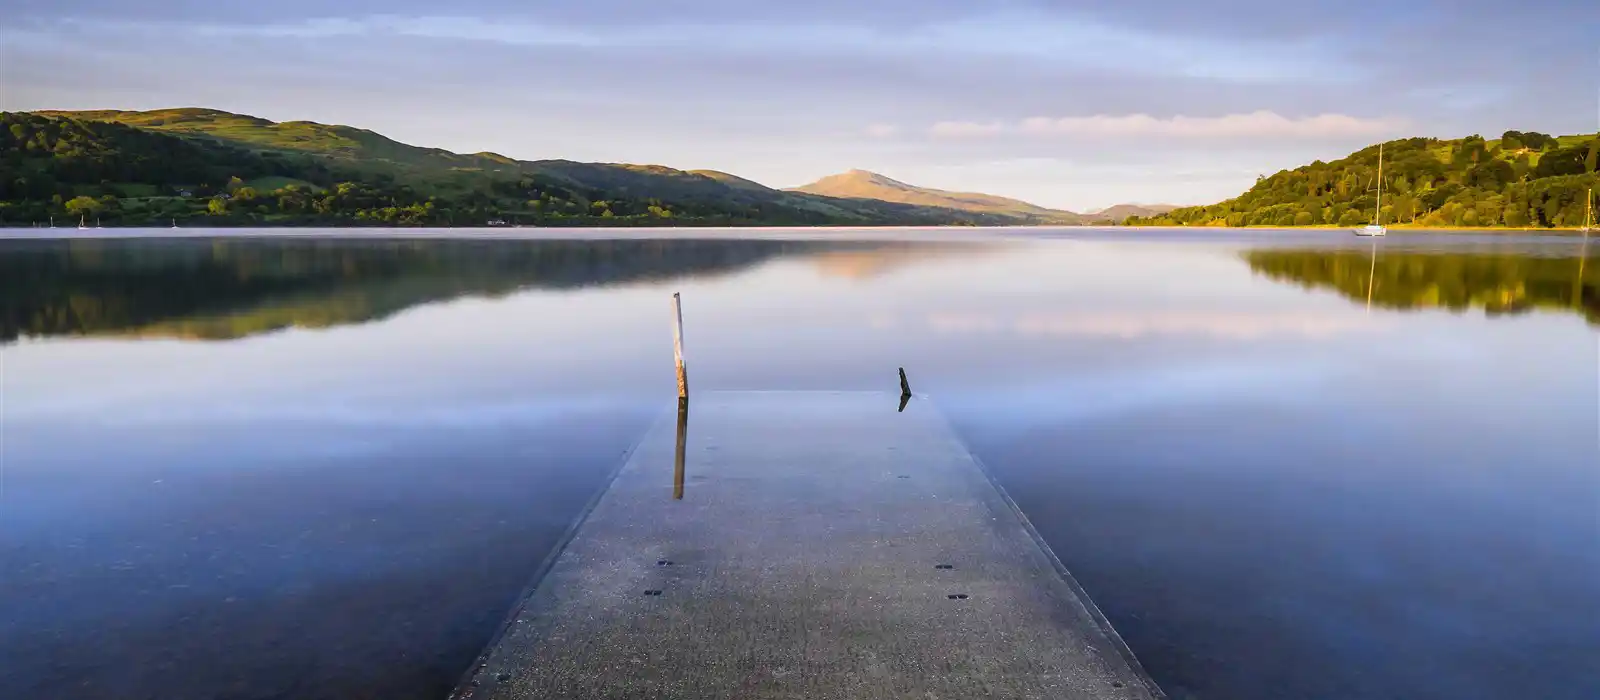 Bala Lake, Gwynedd, Wales